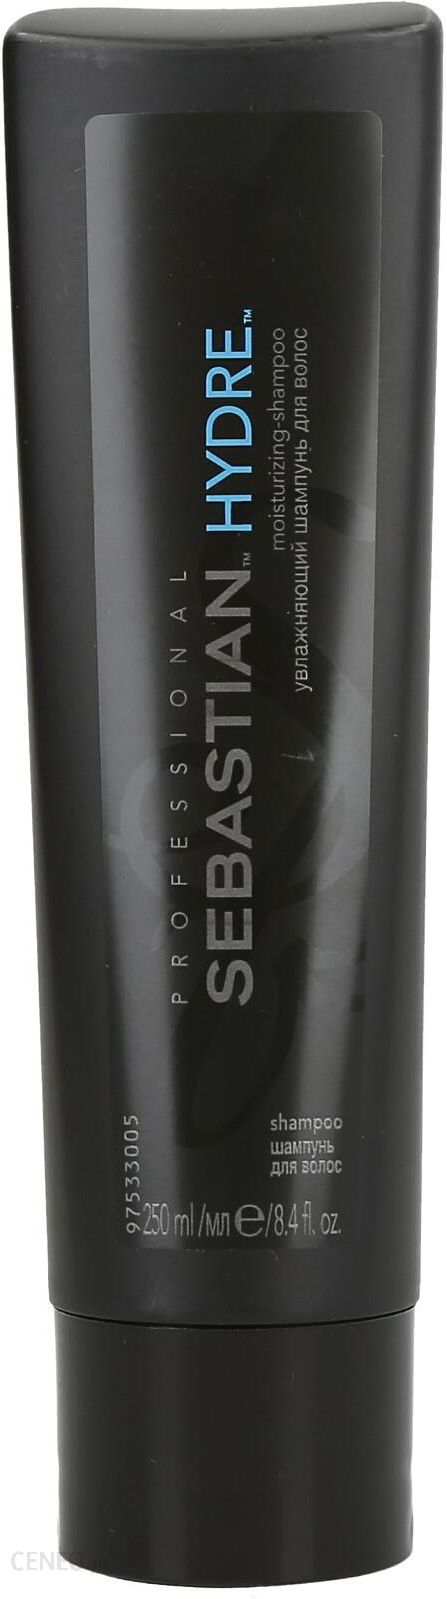 sebastian professional hydre szampon do włosów suchych i zniszczonych